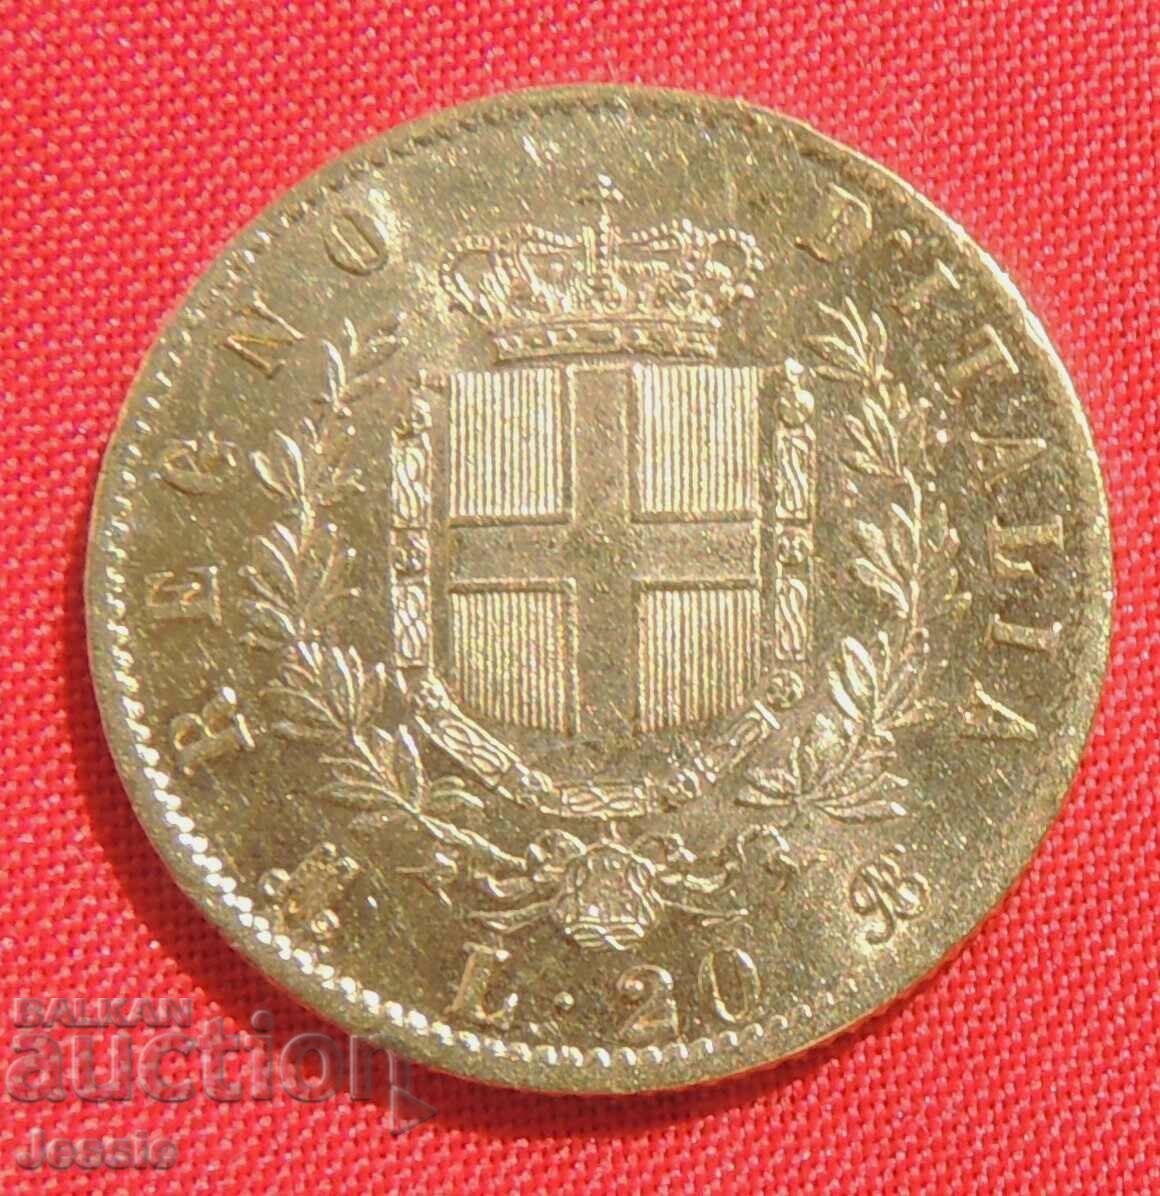 20 lire 1873 Italia (20 lire Italia) (aur)